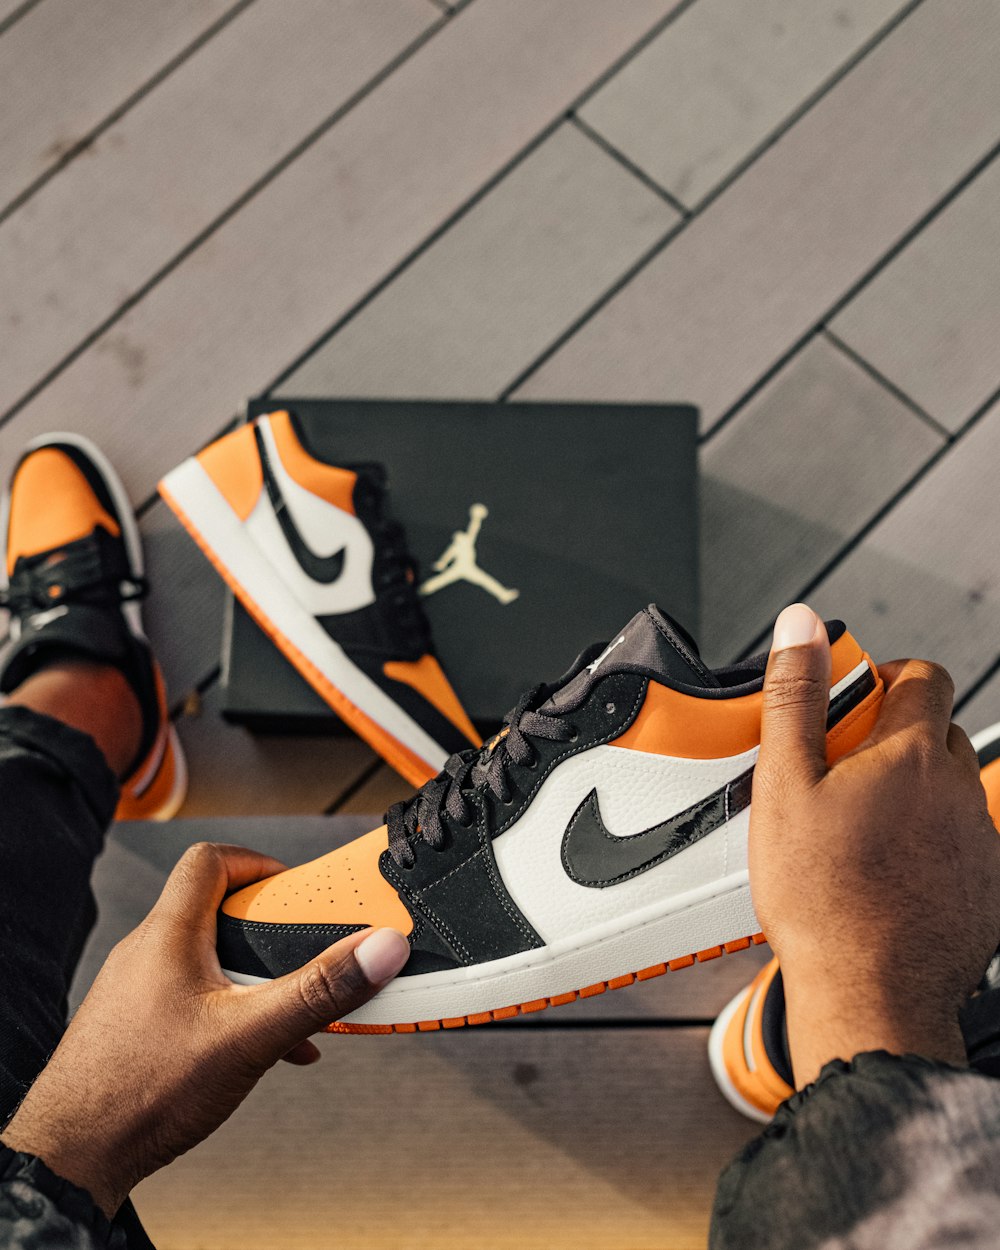 persona seduta e con in mano una sneaker bassa Air Jordan 1 bianca,  arancione e nera foto – Uk Immagine gratuita su Unsplash